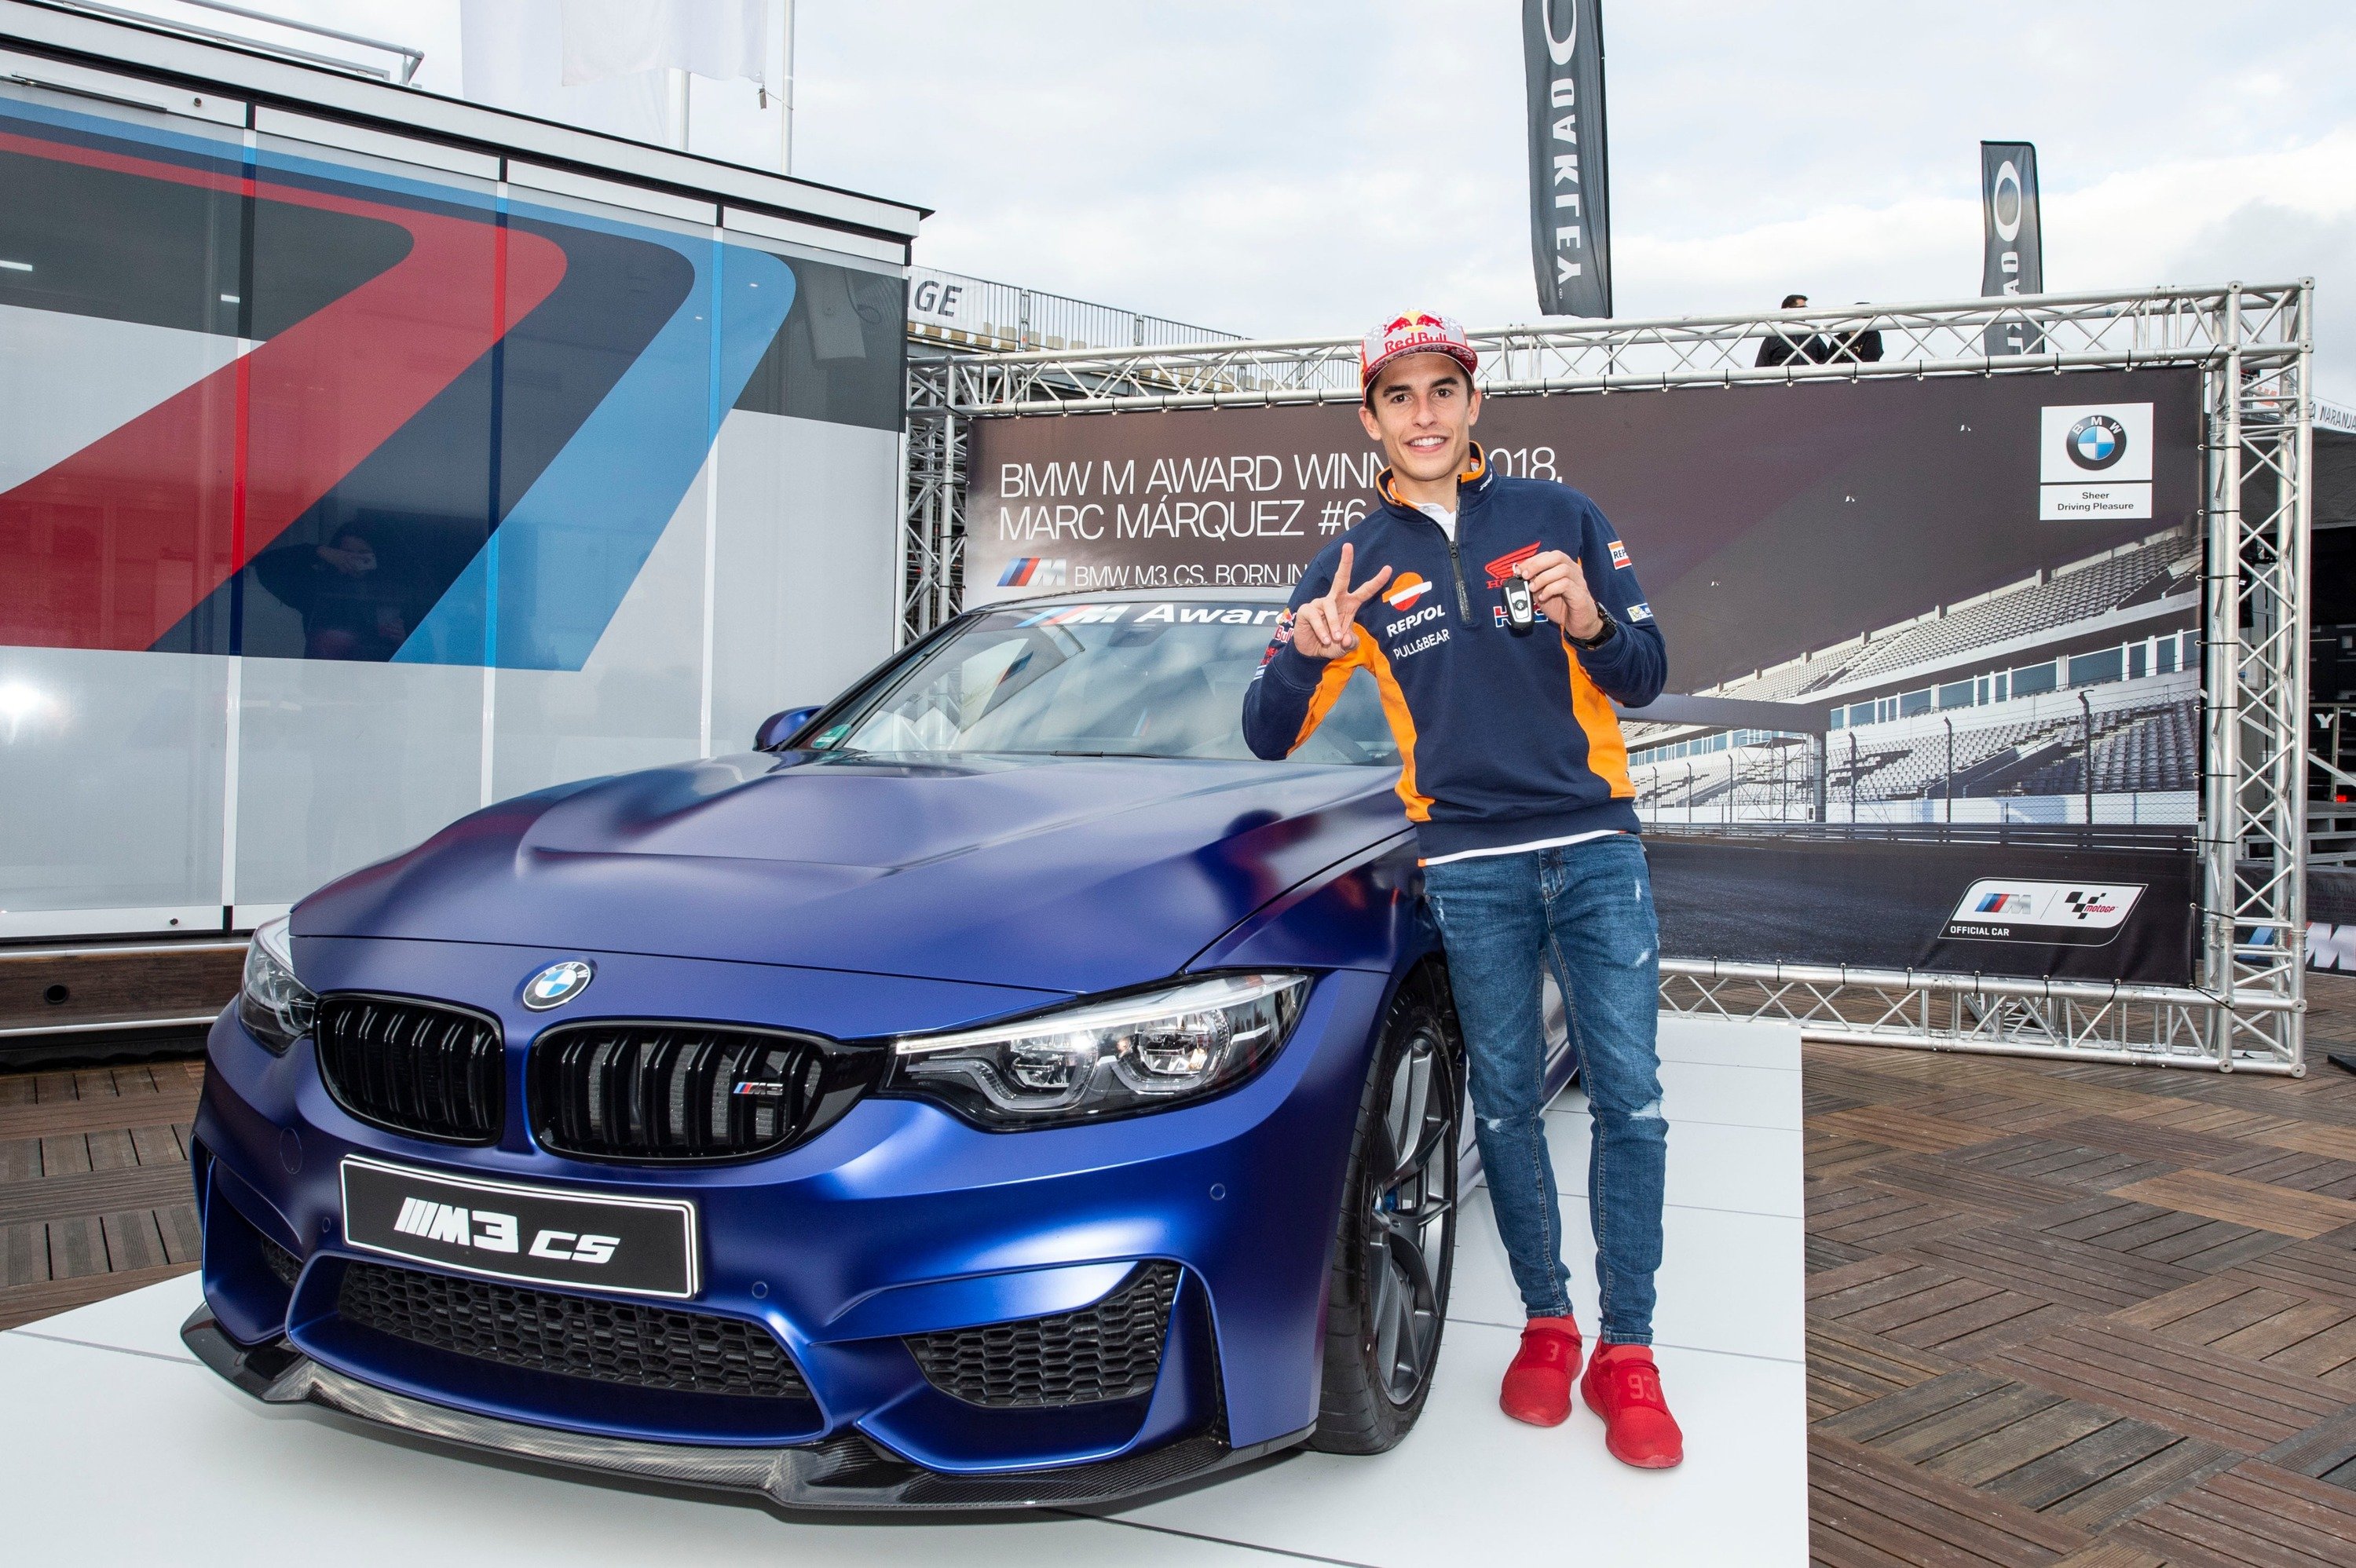 Marc Marquez vince per la 6^ volta il BMW M Award, per lui una M3 CS